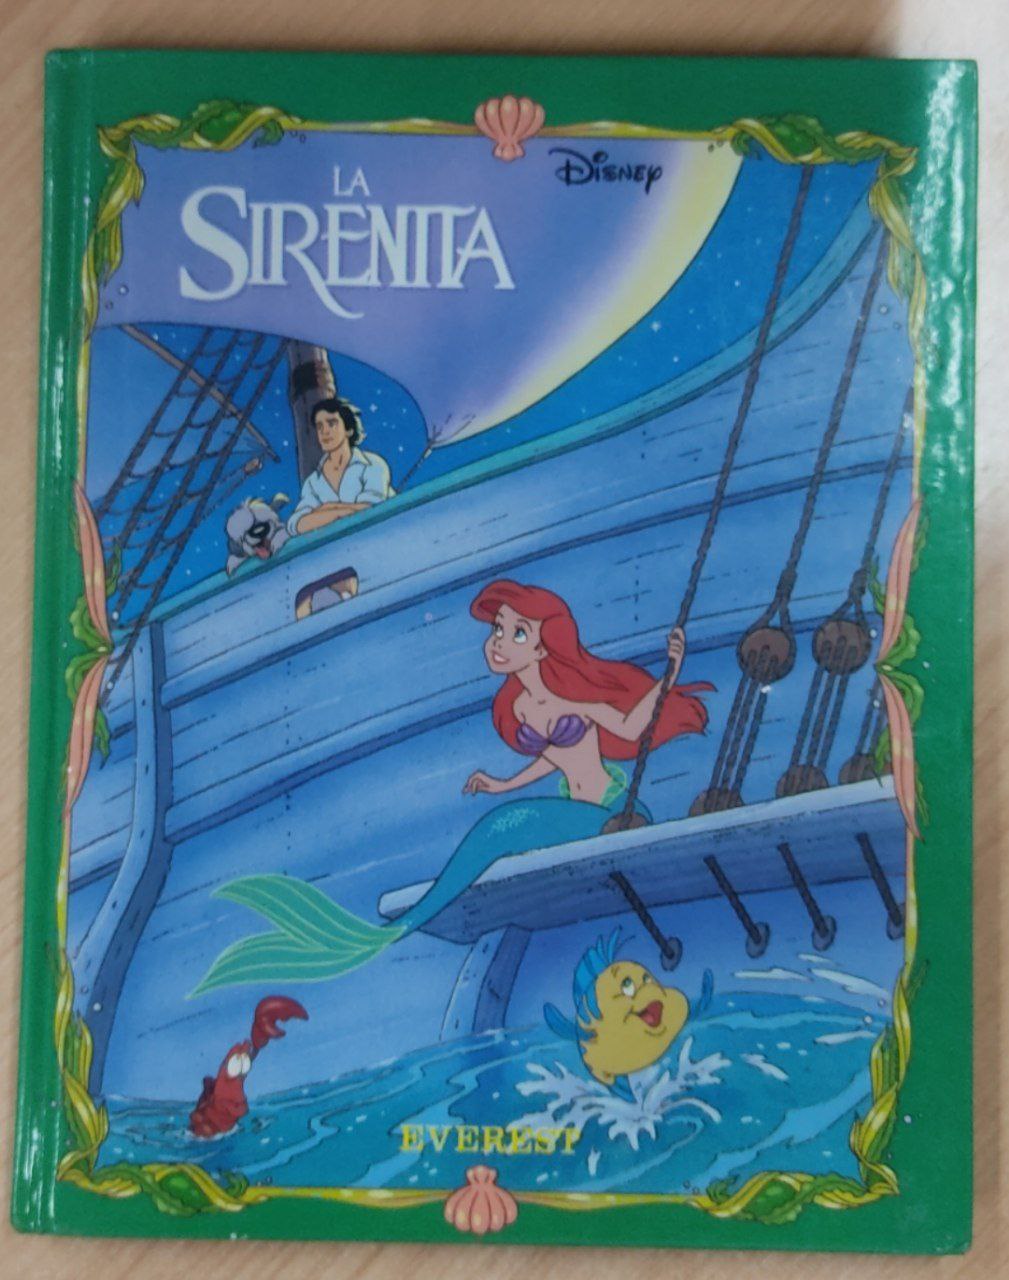 La sirenita - Libro de arte bajo el mar - Disney, de Disney., vol. 1.  Editorial Planeta, tapa blanda, edición 2023 en español, 2023